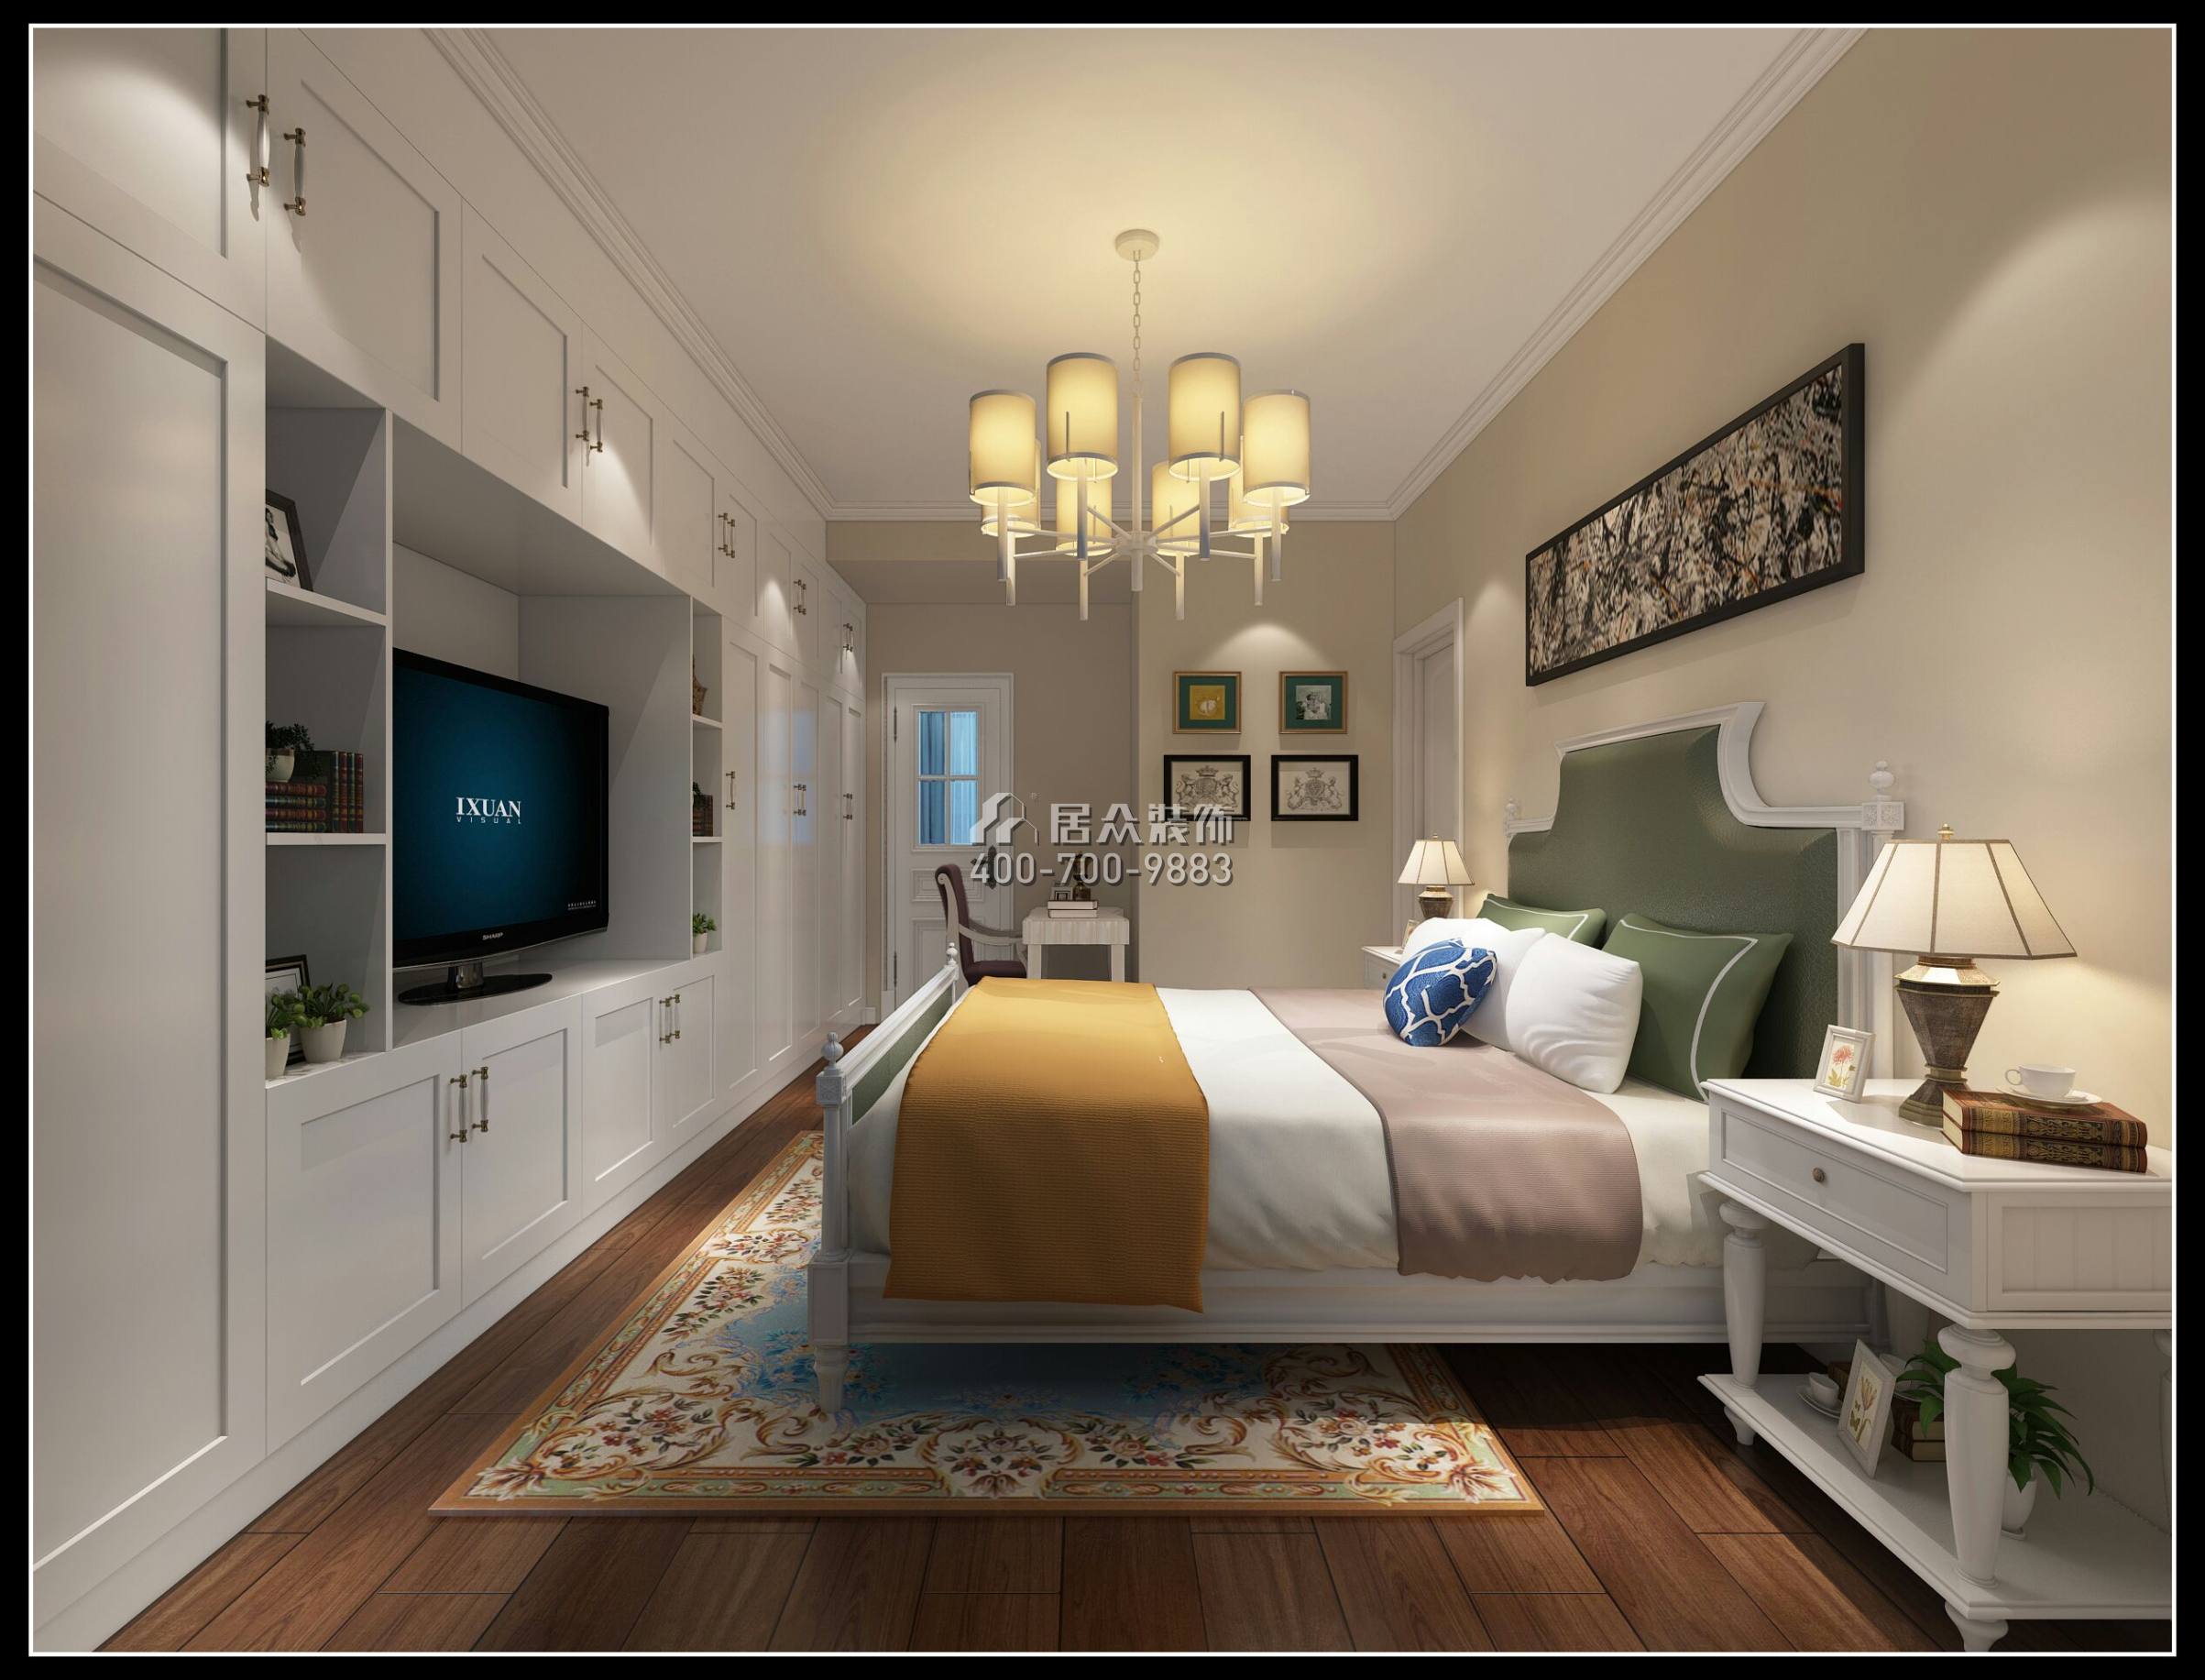 中信海阔天空130平方米现代简约风格平层户型卧室装修效果图